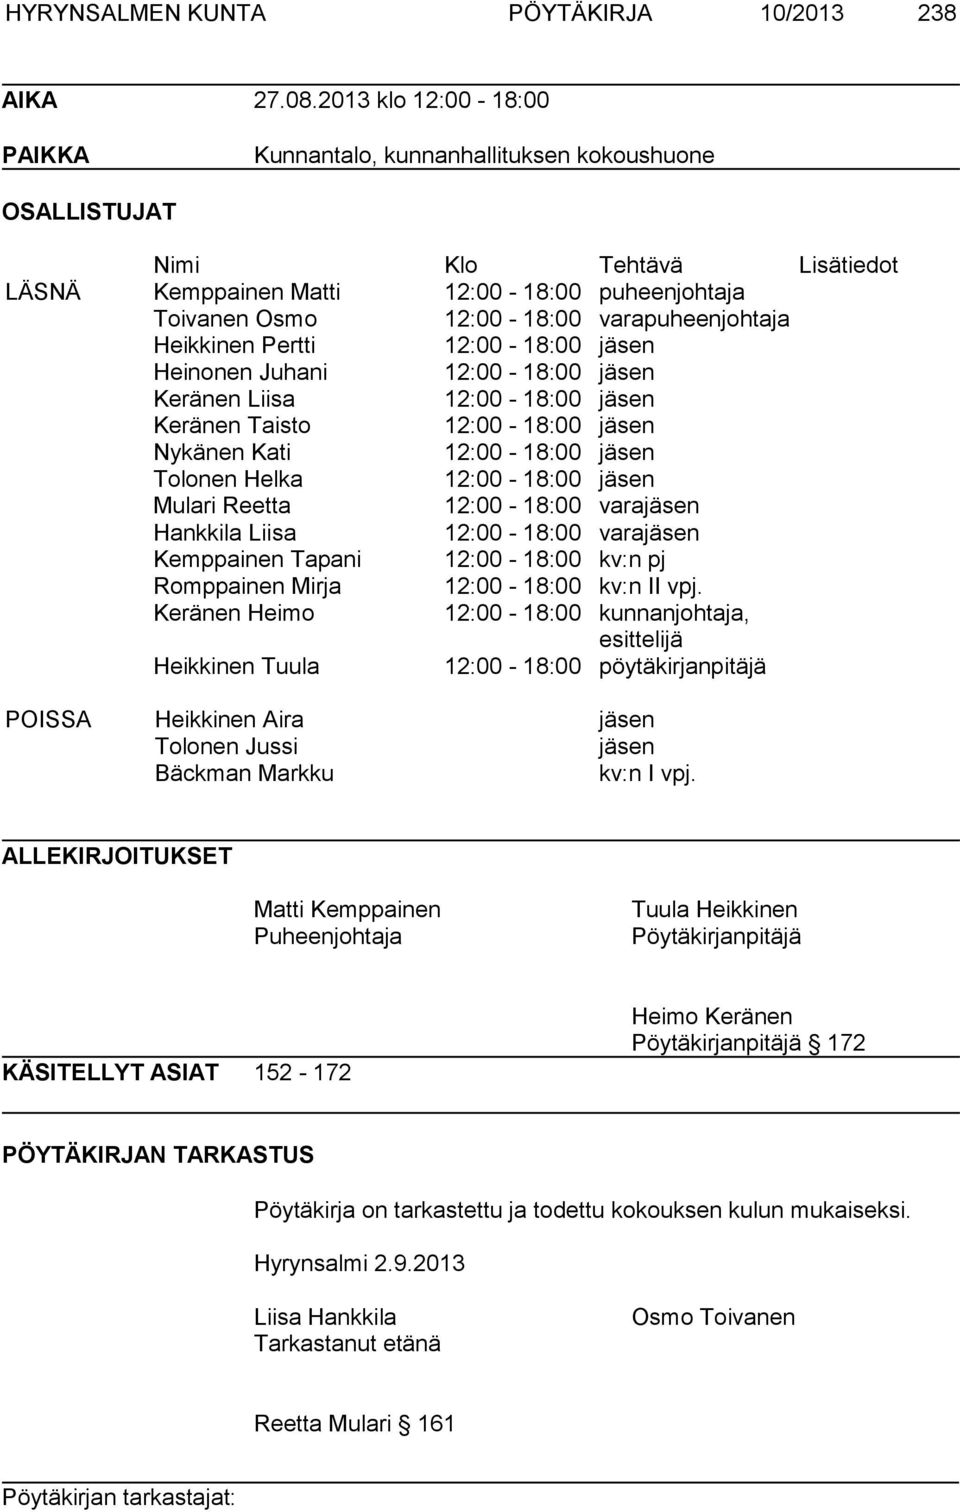 varapuheenjohtaja Heikkinen Pertti 12:00-18:00 jäsen Heinonen Juhani 12:00-18:00 jäsen Keränen Liisa 12:00-18:00 jäsen Keränen Taisto 12:00-18:00 jäsen Nykänen Kati 12:00-18:00 jäsen Tolonen Helka